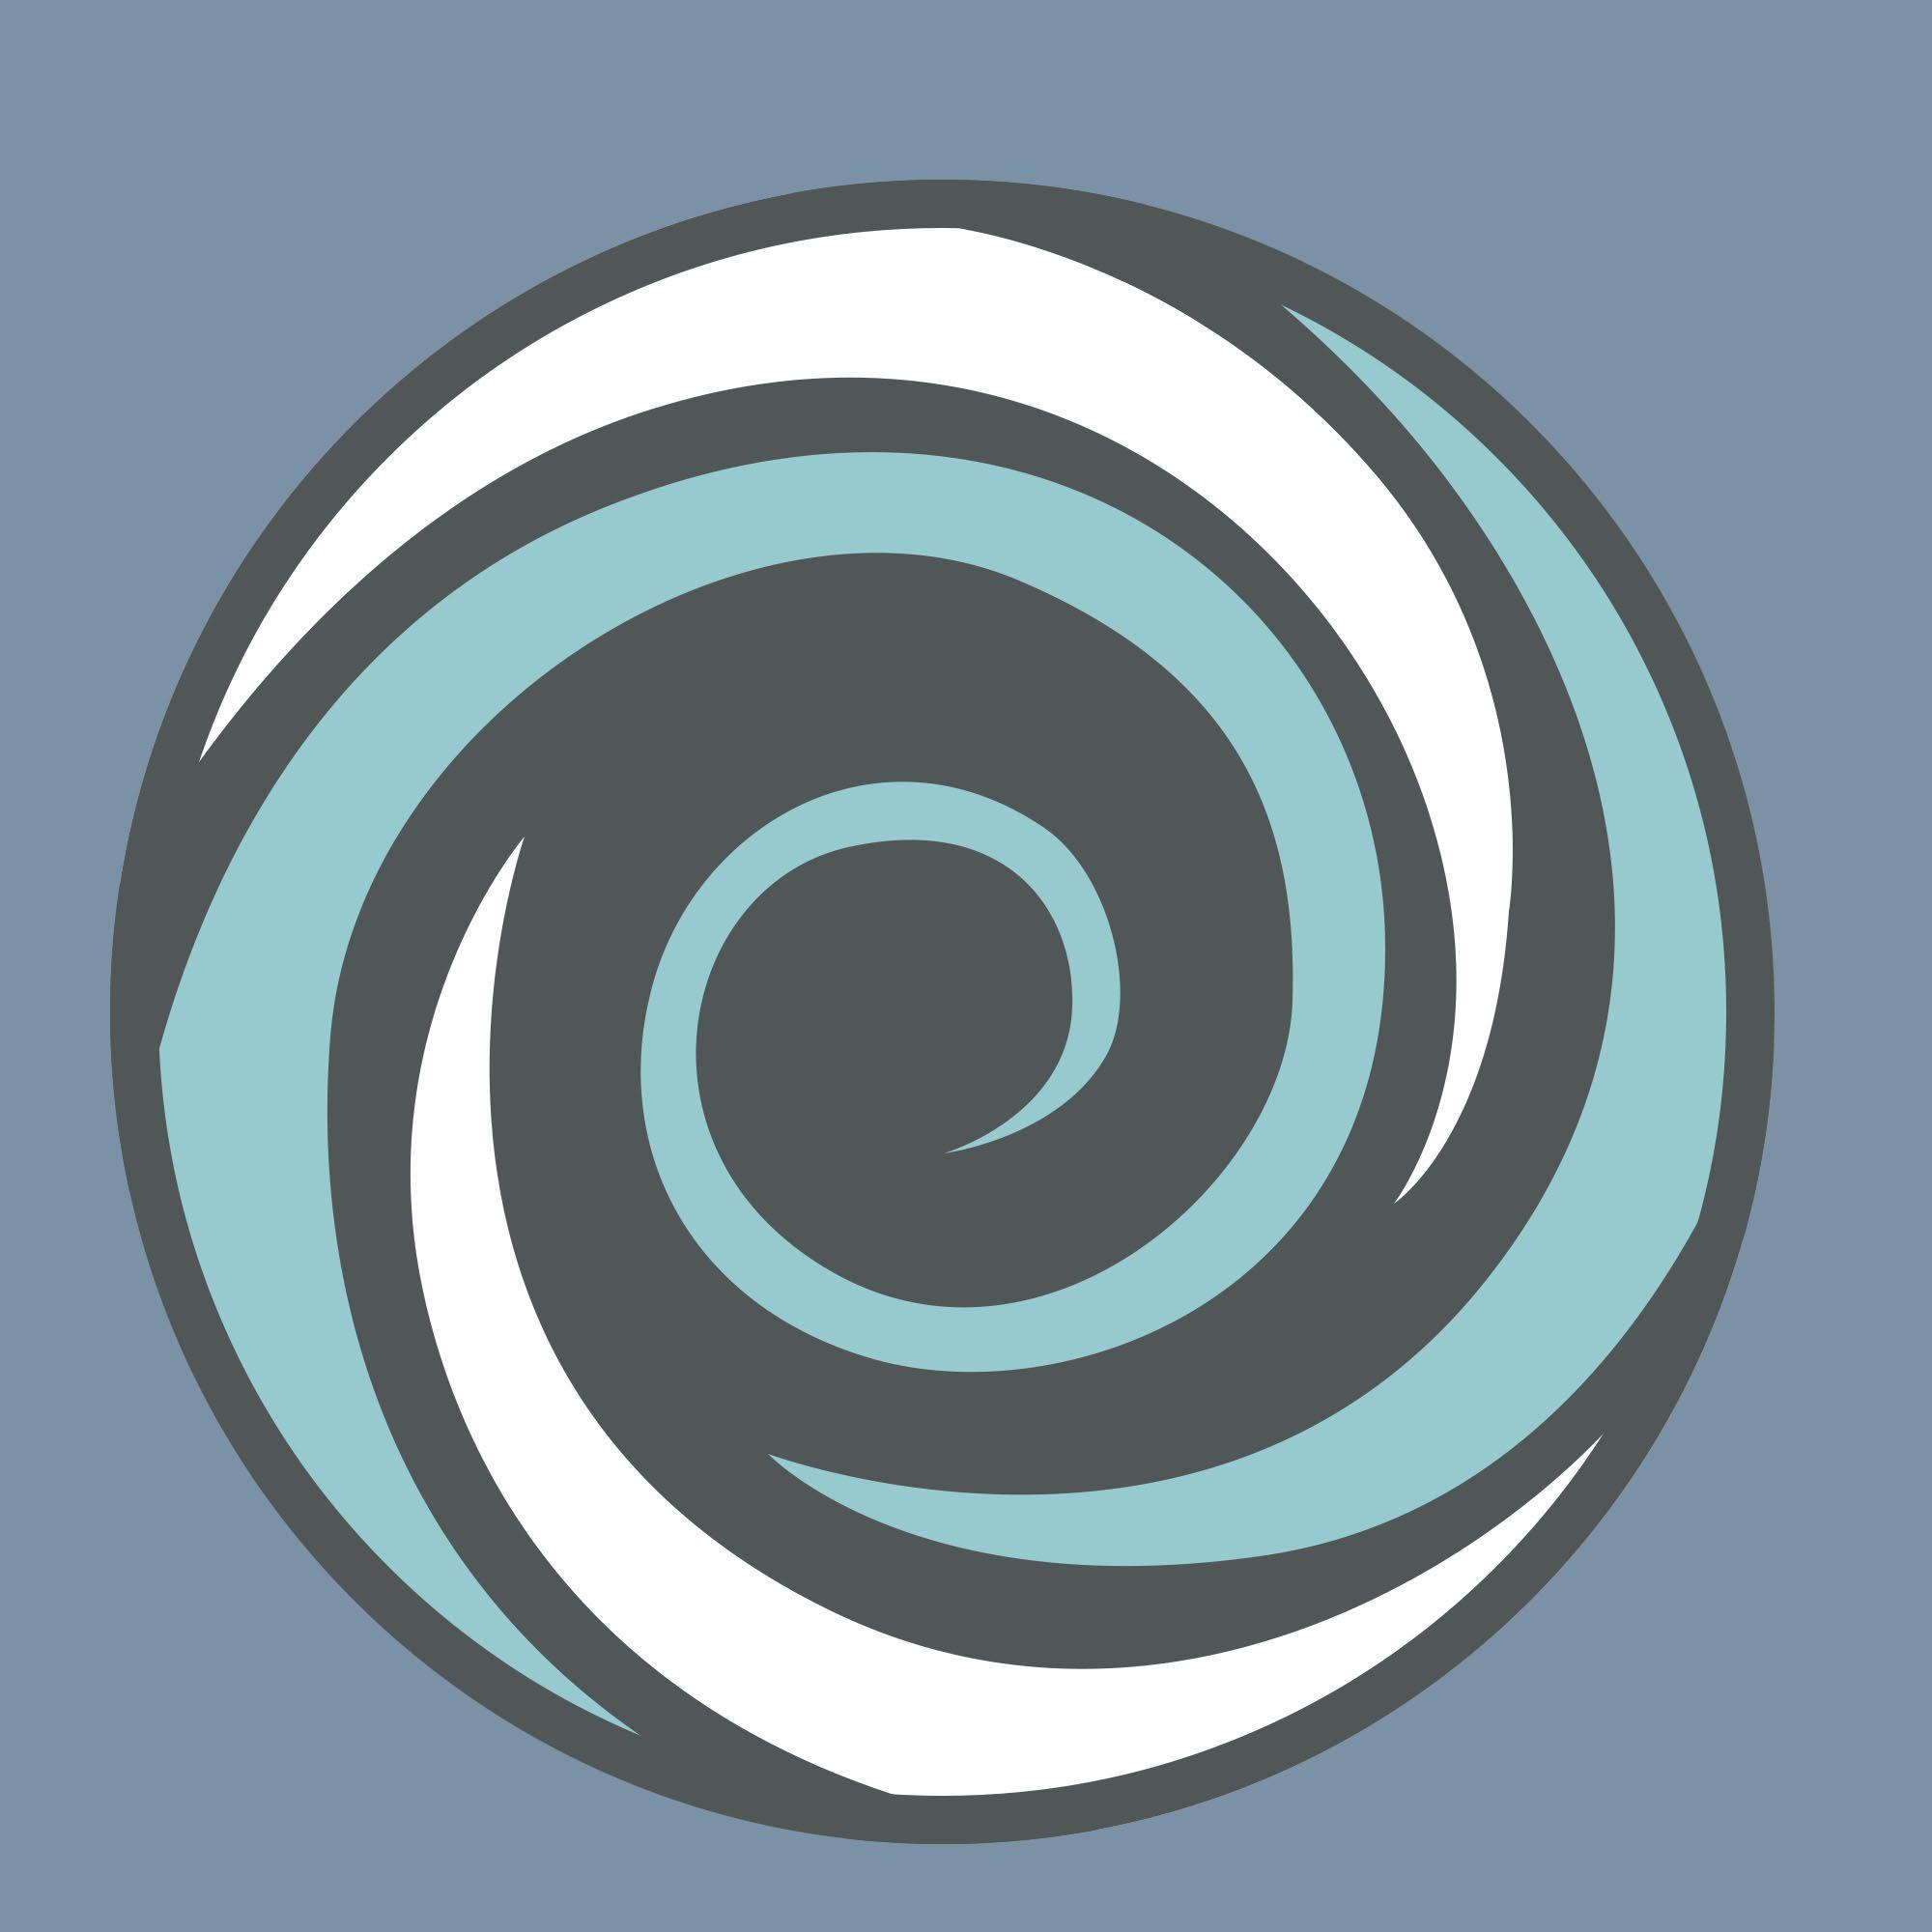 Hypnosis Logo - Durango Medical Hypnosis logo Growth Organization